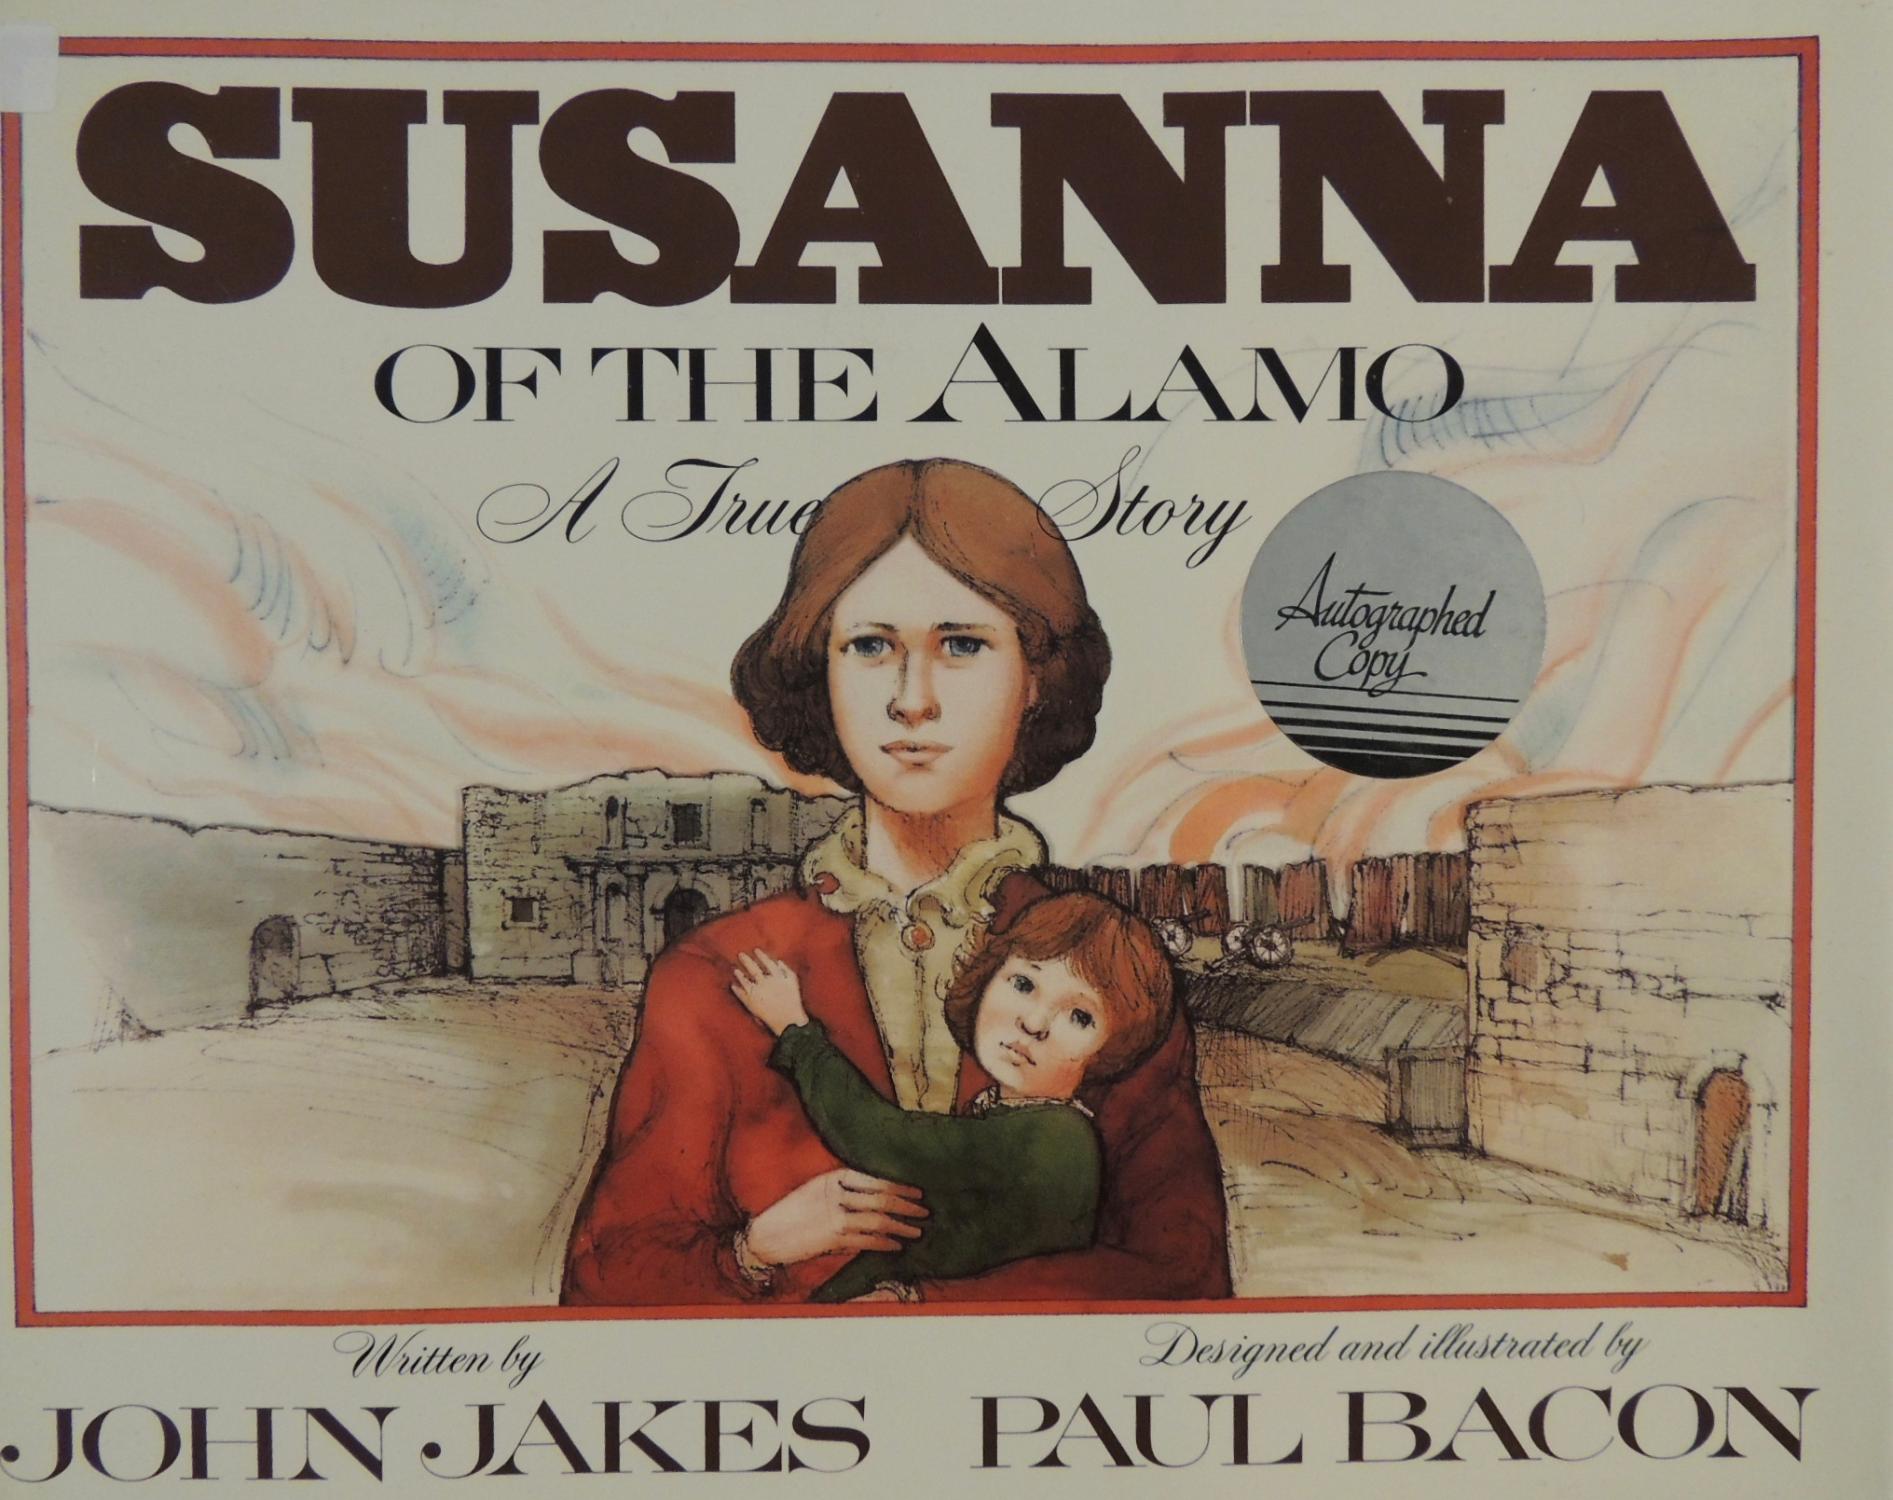 Susannah of the alamo